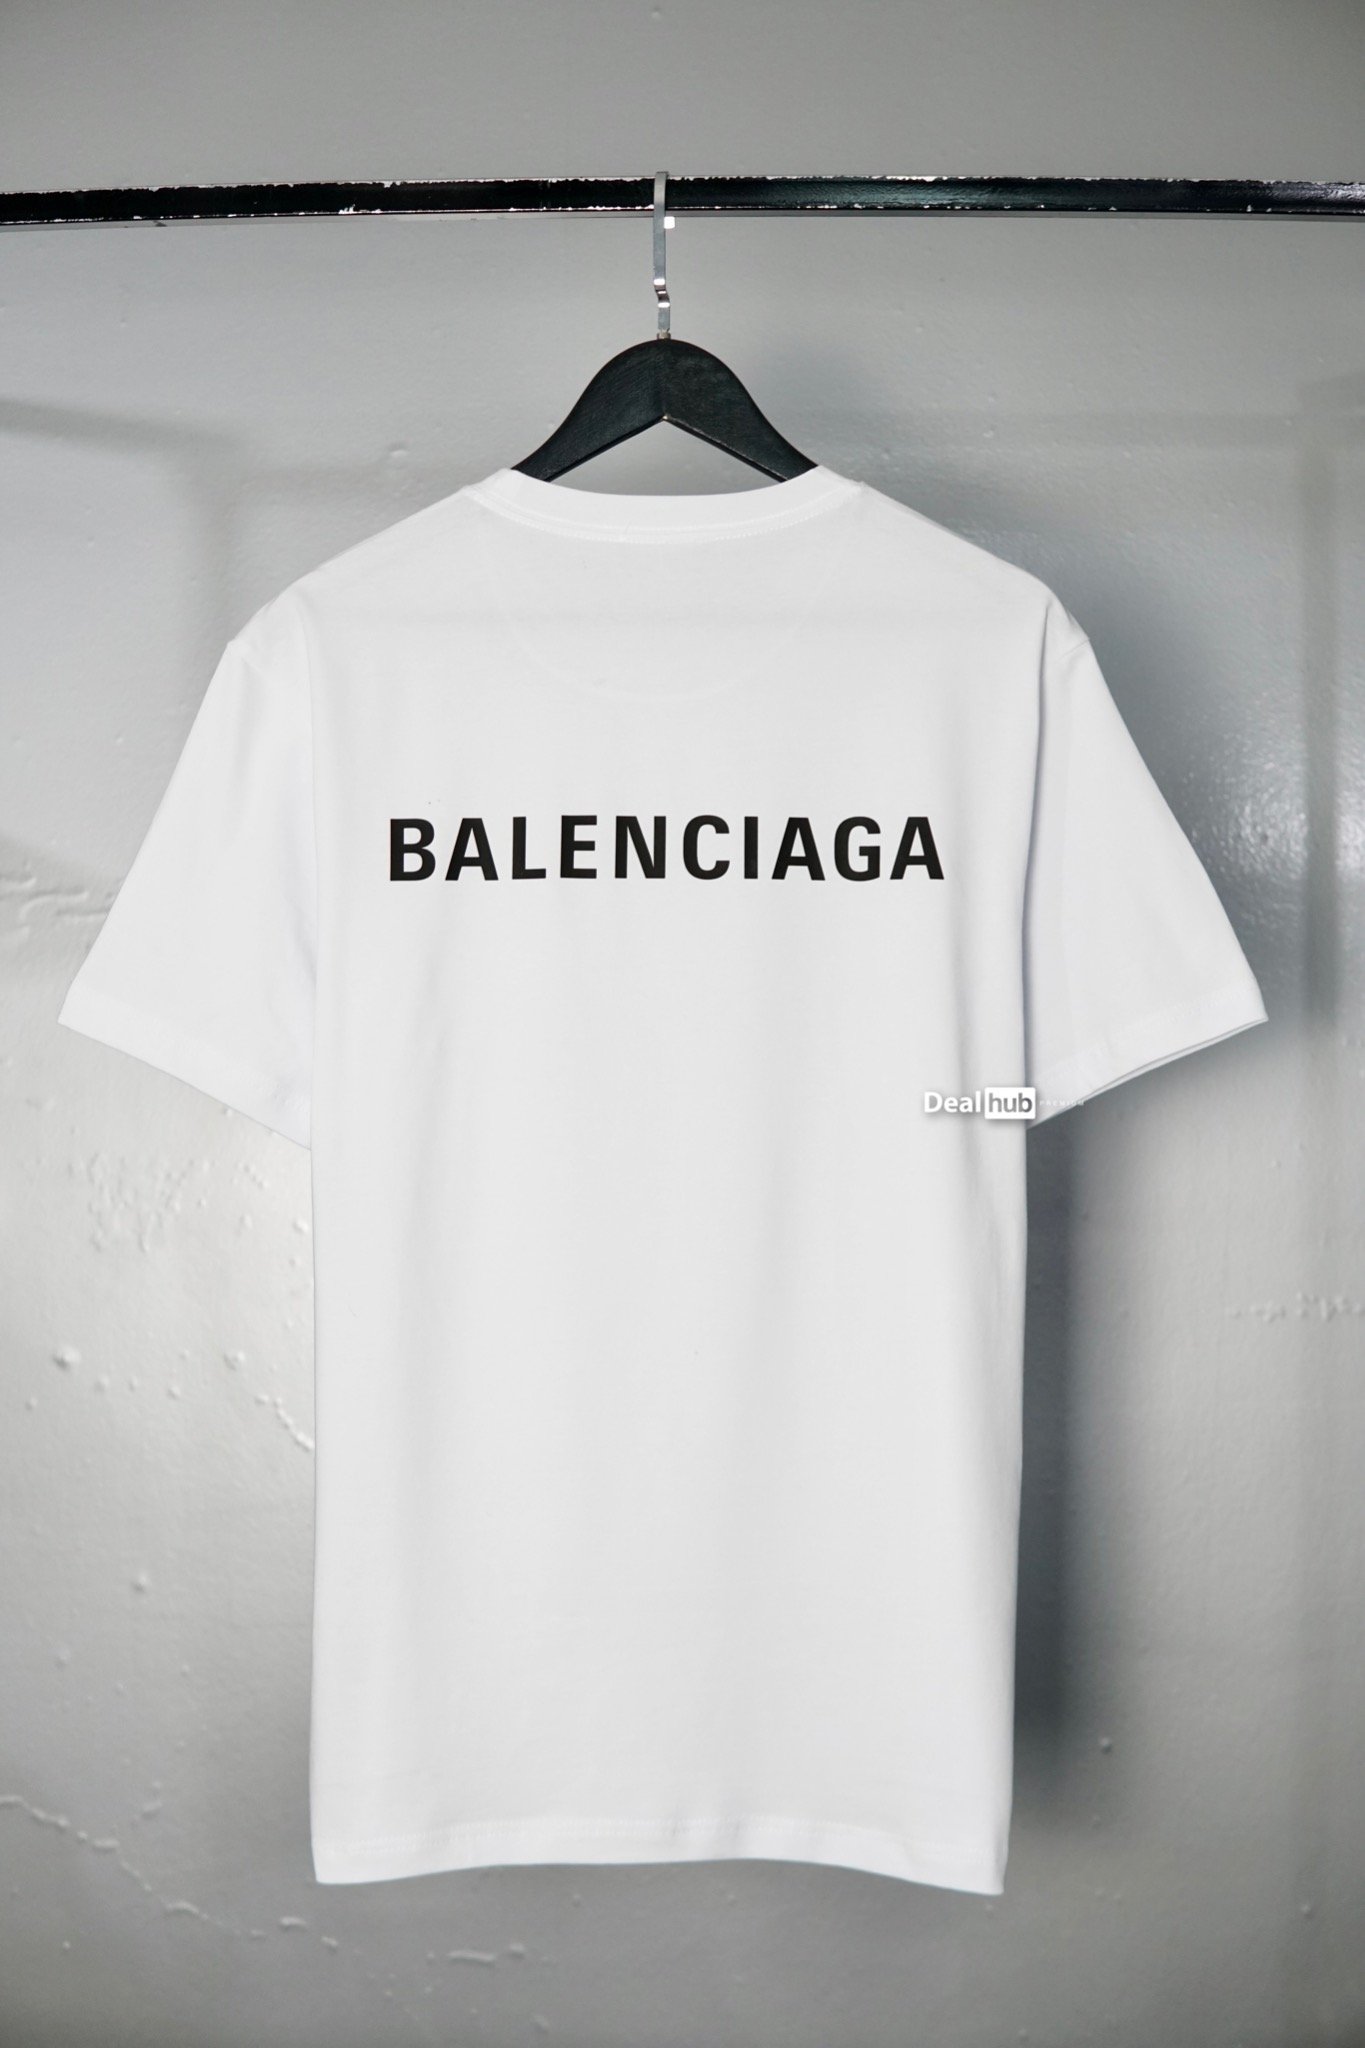 BALENCIAGA cotton tshirt with logo  White  Balenciaga tshirt 612965  TIV54 online on GIGLIOCOM